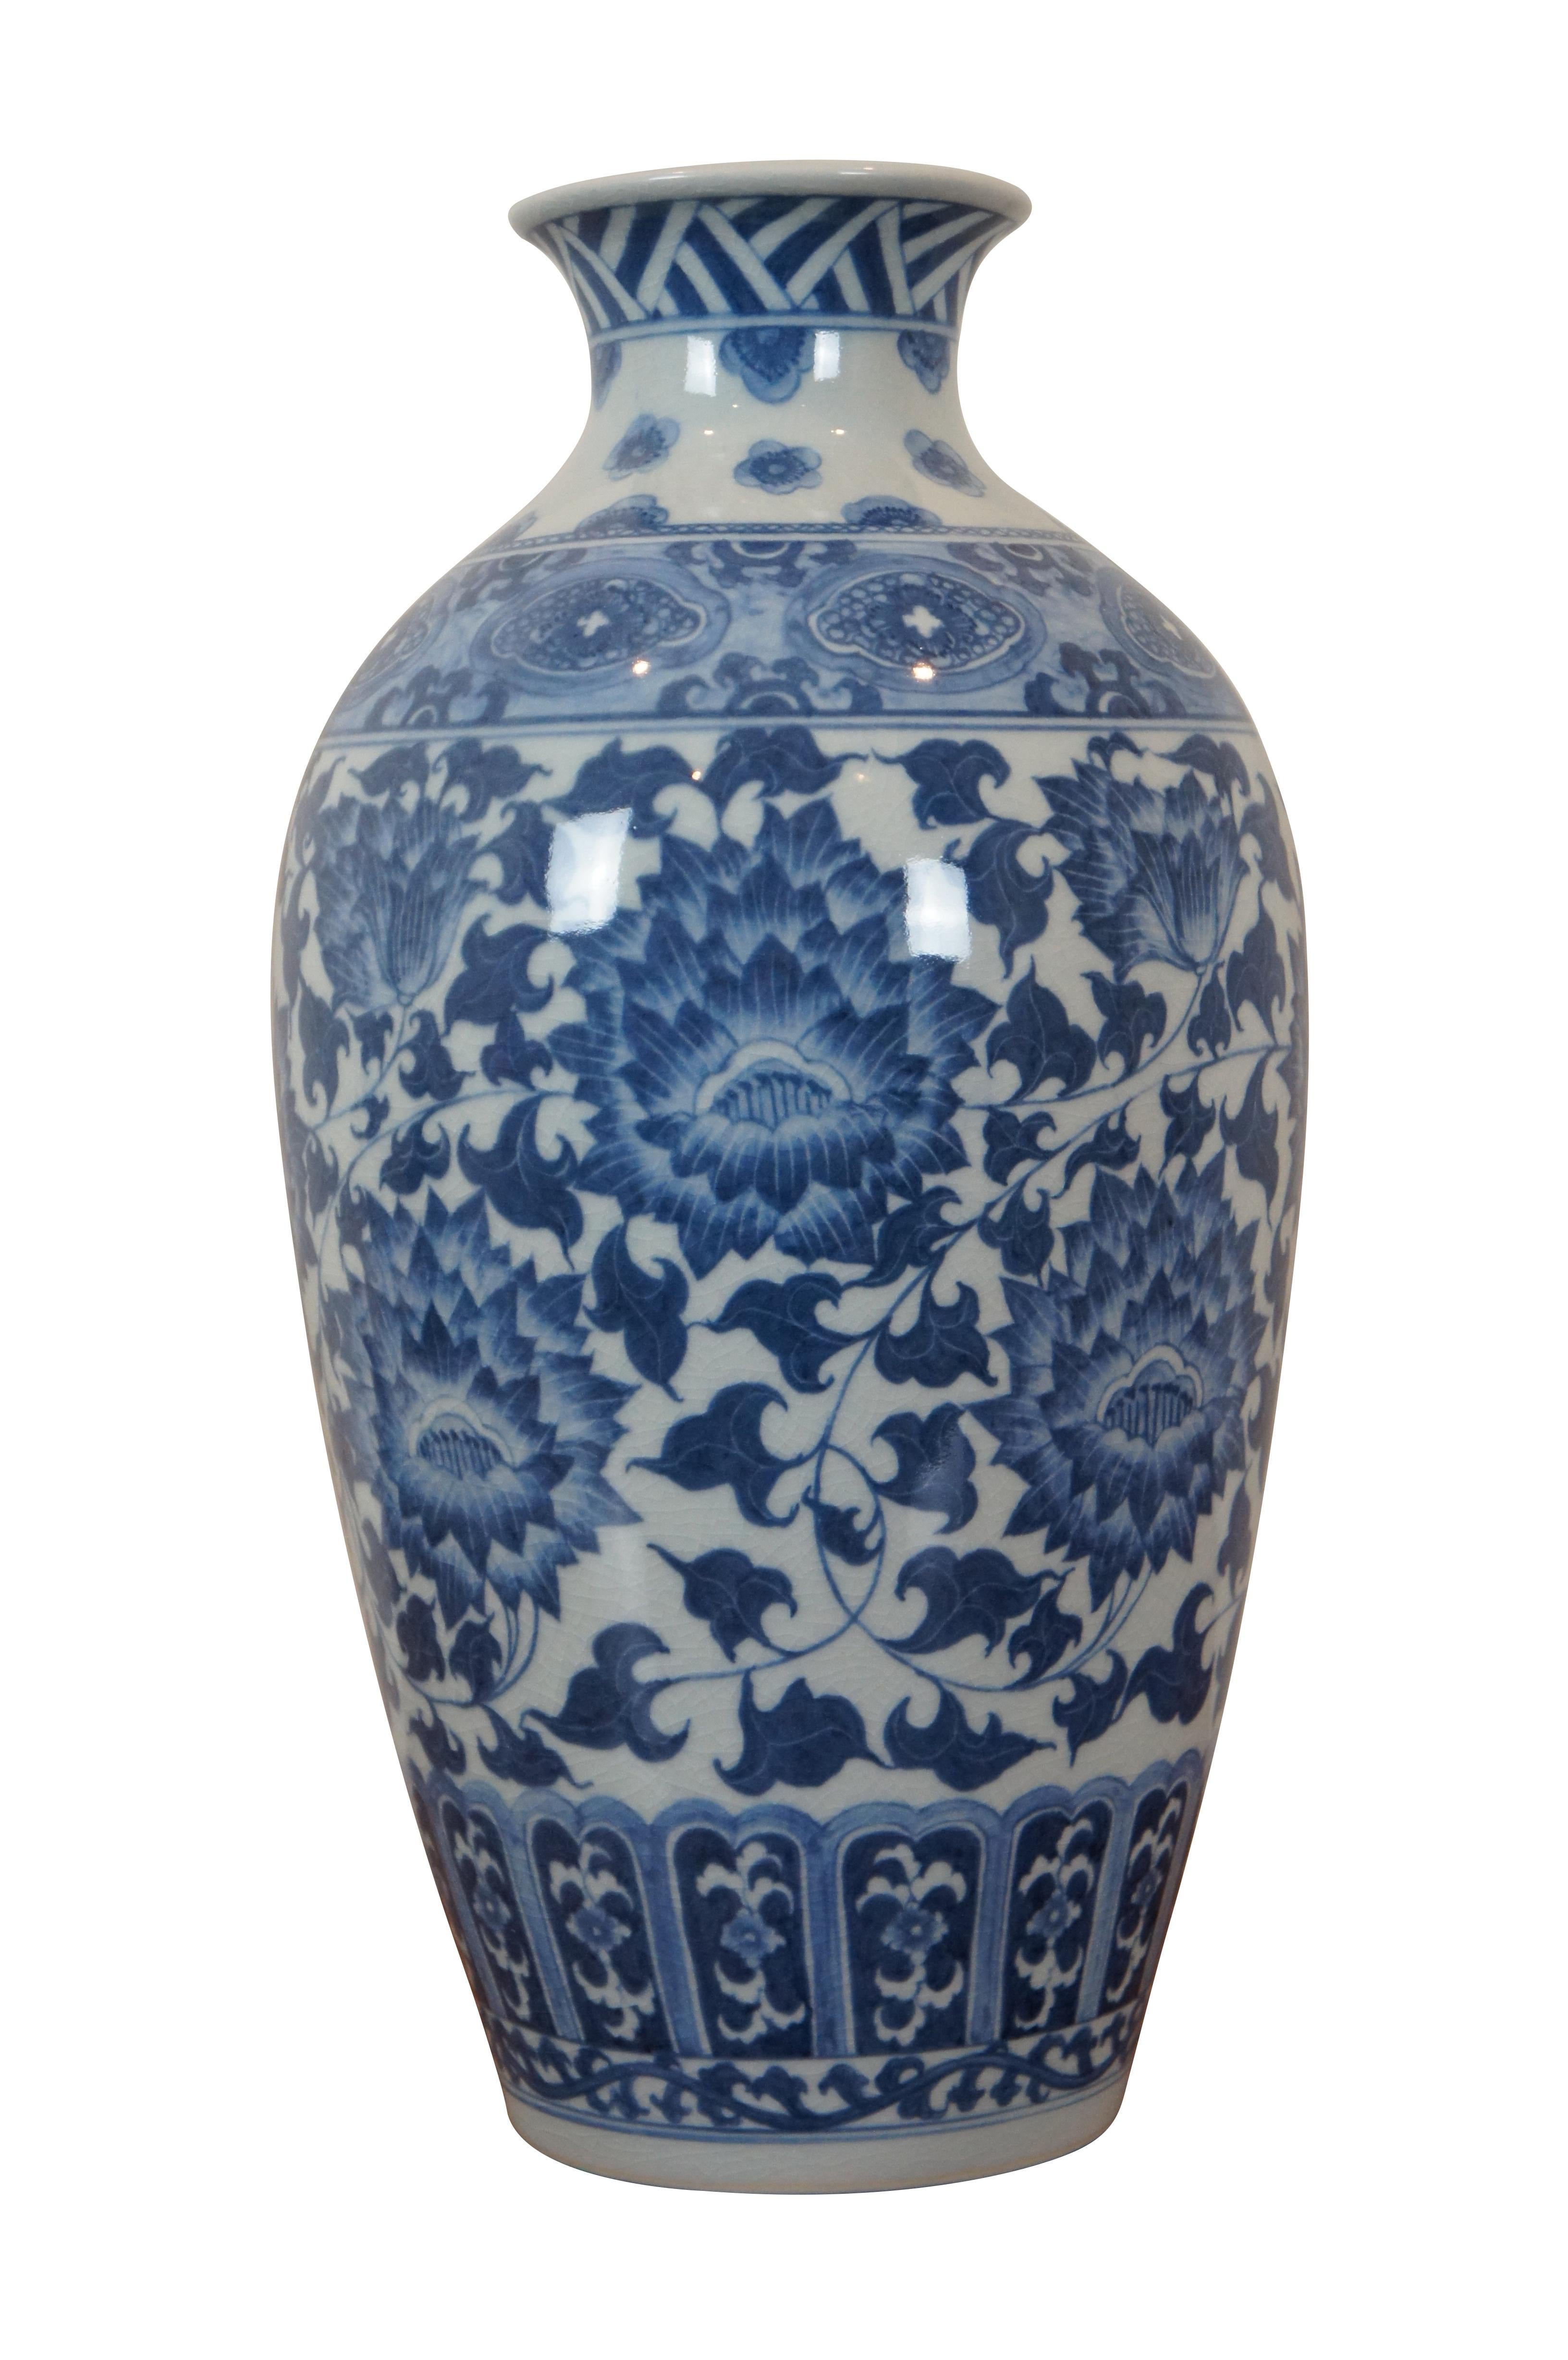 Vase vintage de style chinois / chinoiserie de Whitingtics présentant un motif floral en bleu et blanc avec des craquelures artistiques à la finition. Fabriqué à la main en Thaïlande. #2187-457.

Dimensions :
8